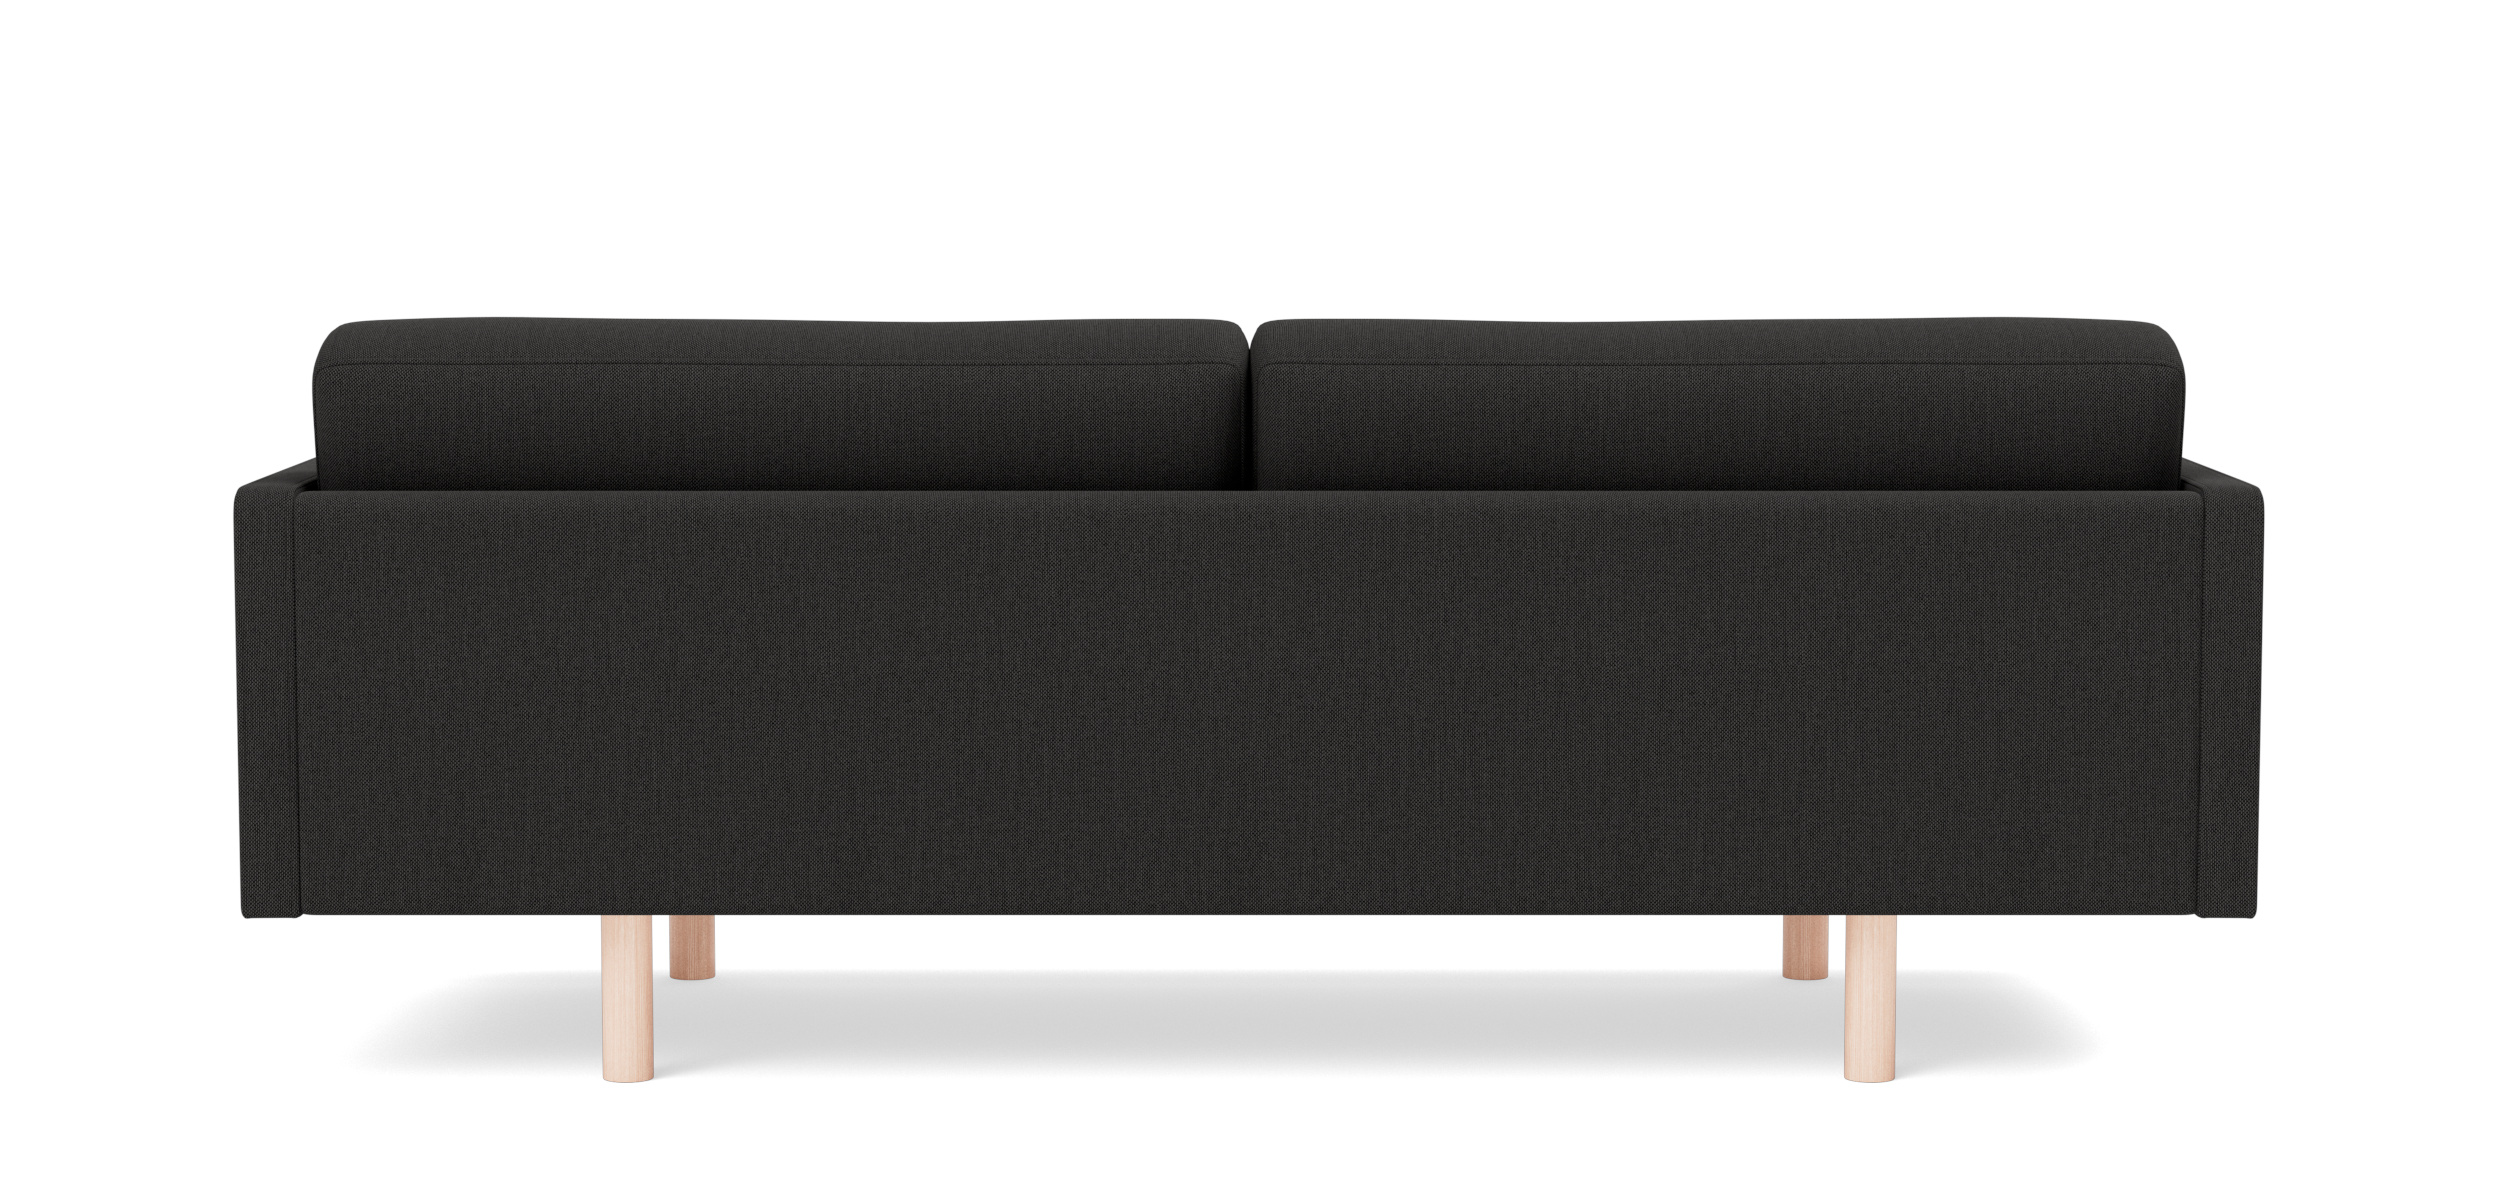 EJ220 Sofa 2-Sitzer, 100 cm, brushed chrom / leder omni 301 schwarz